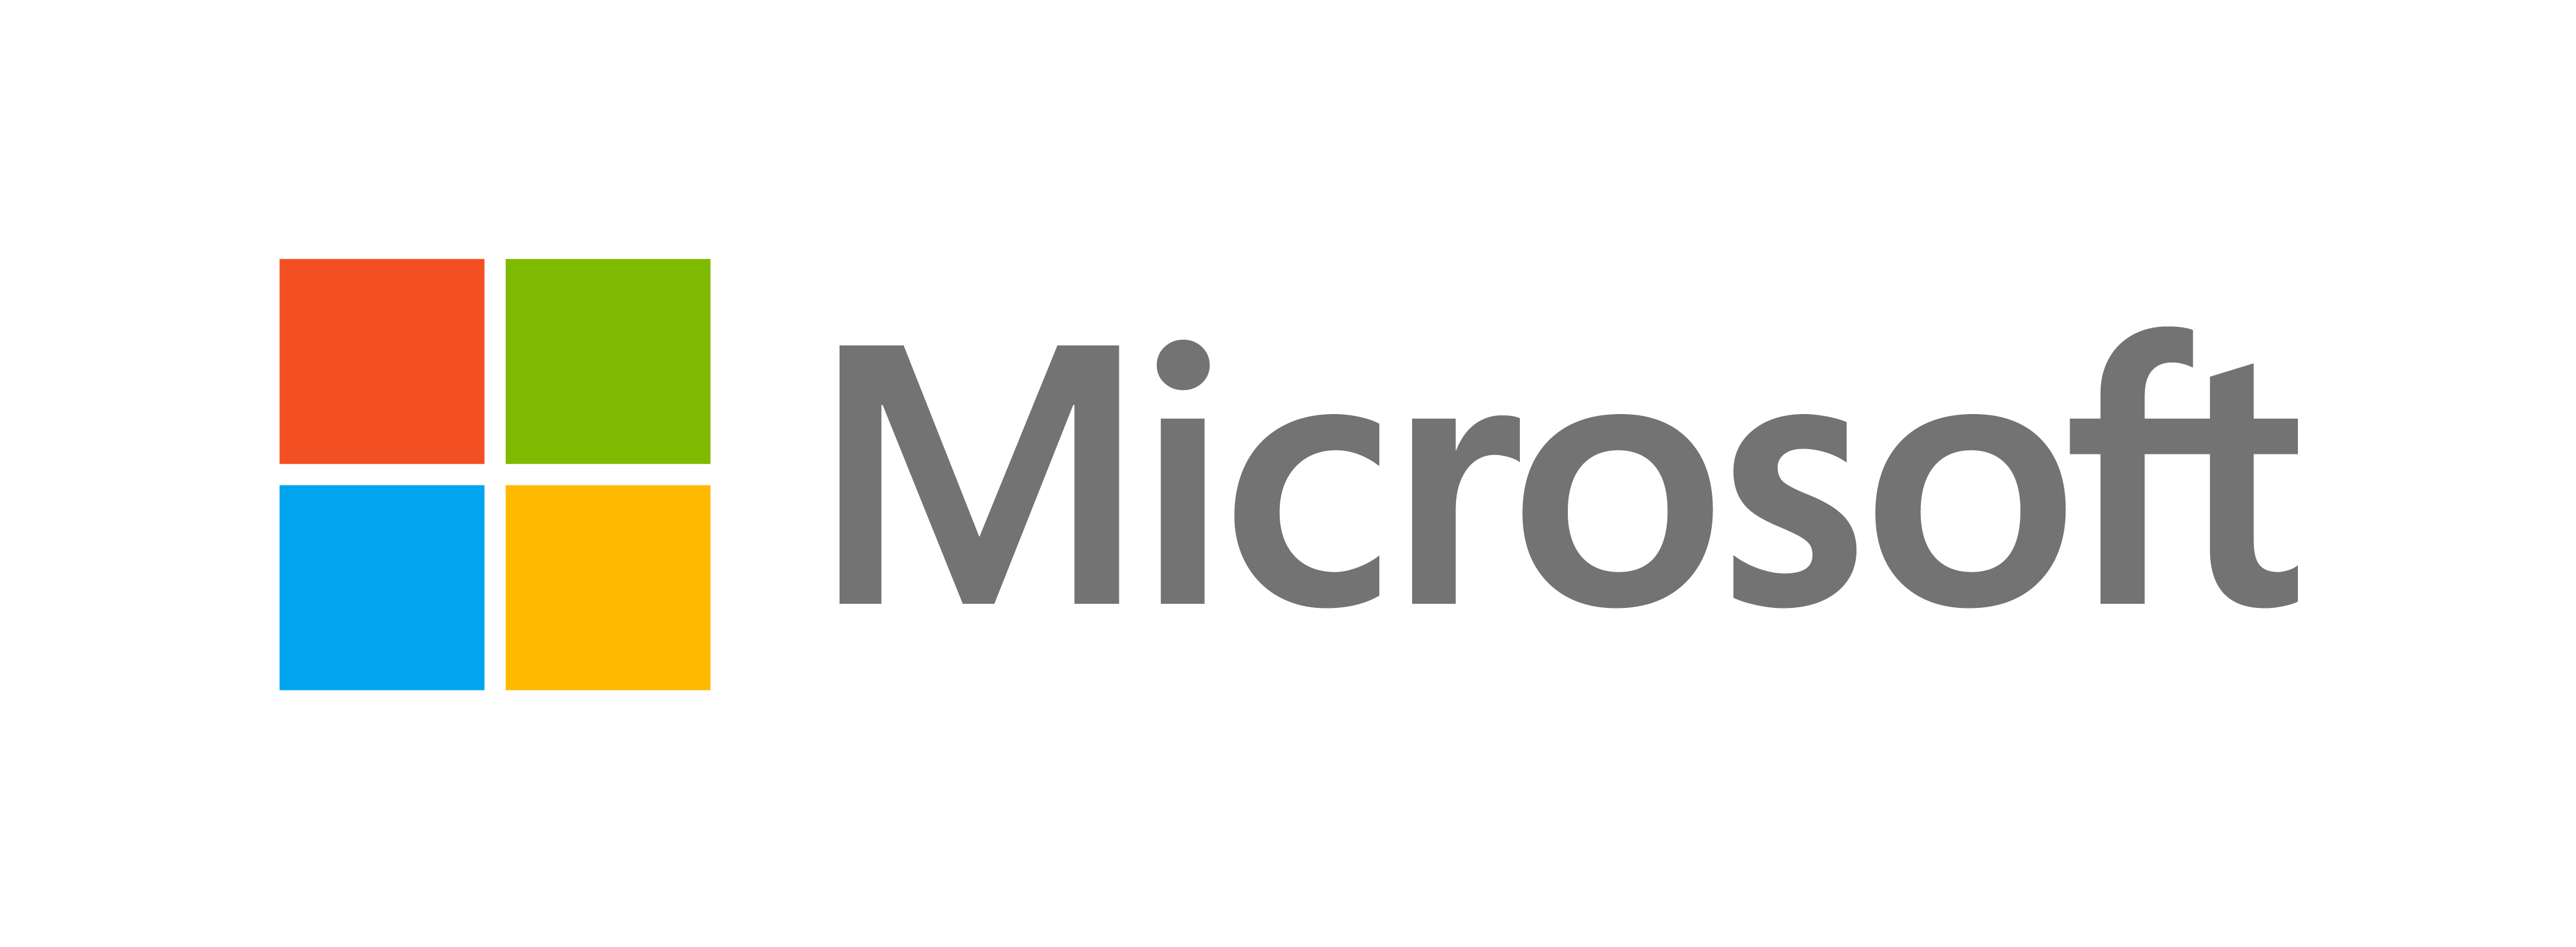 Microsoft presenterar ett nytt utseende - Microsofts officiella blogg